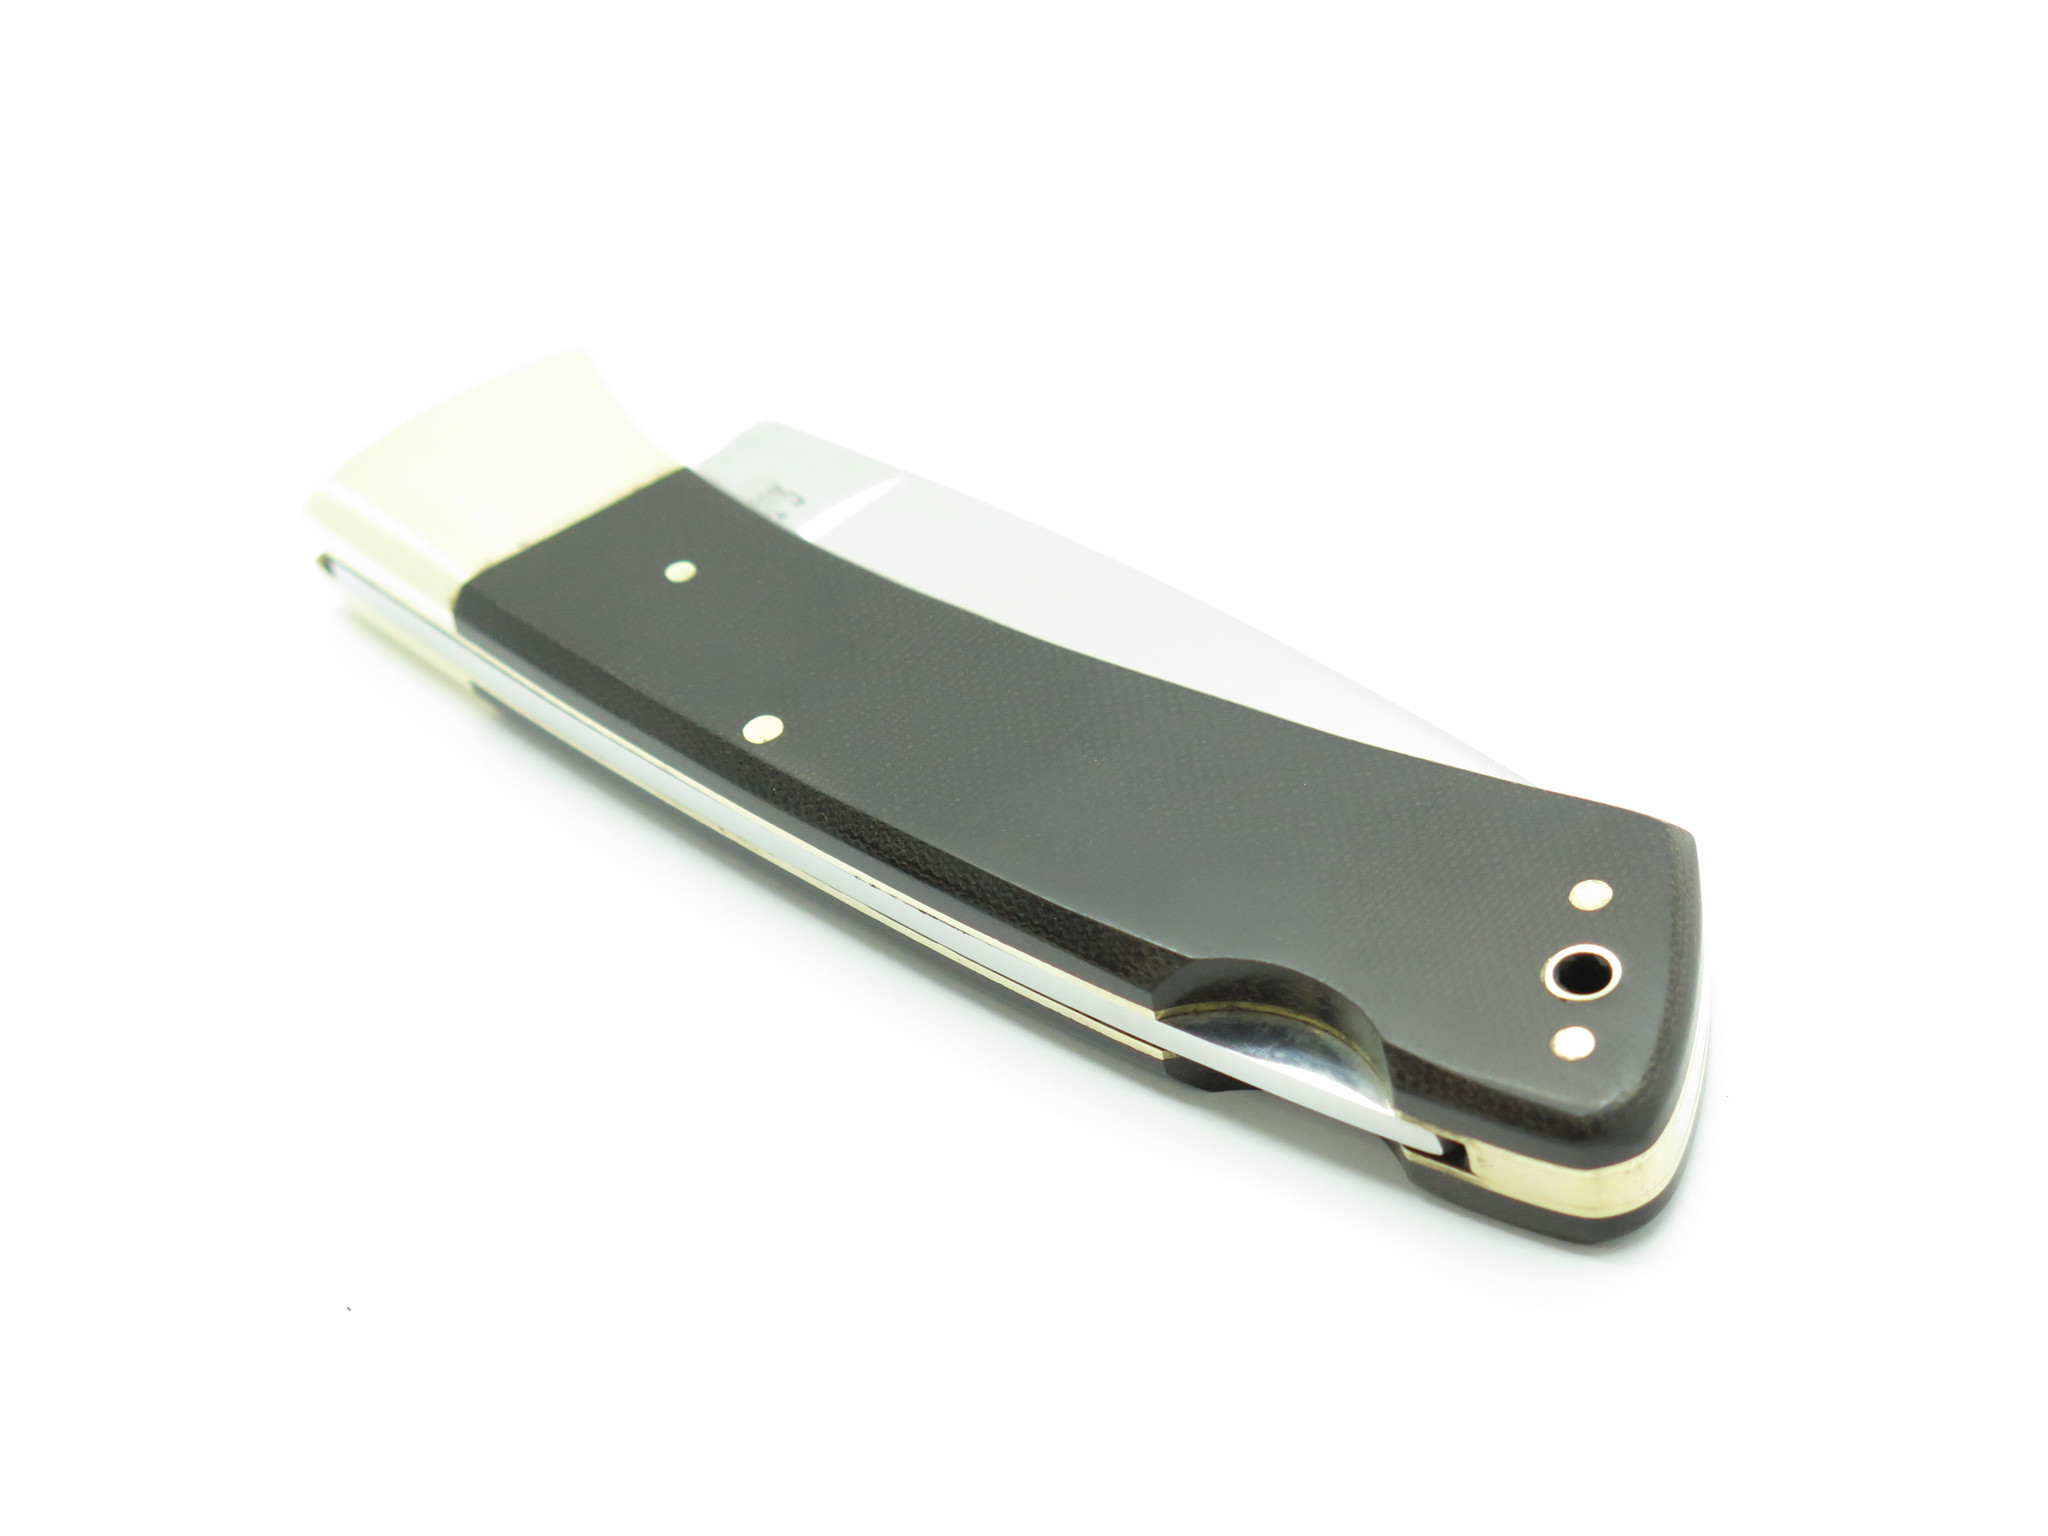 Vtg 1980s Herbertz German Ceramic Blade Folding Lockback 3.875 Pocket Knife  - ePrague, LLC